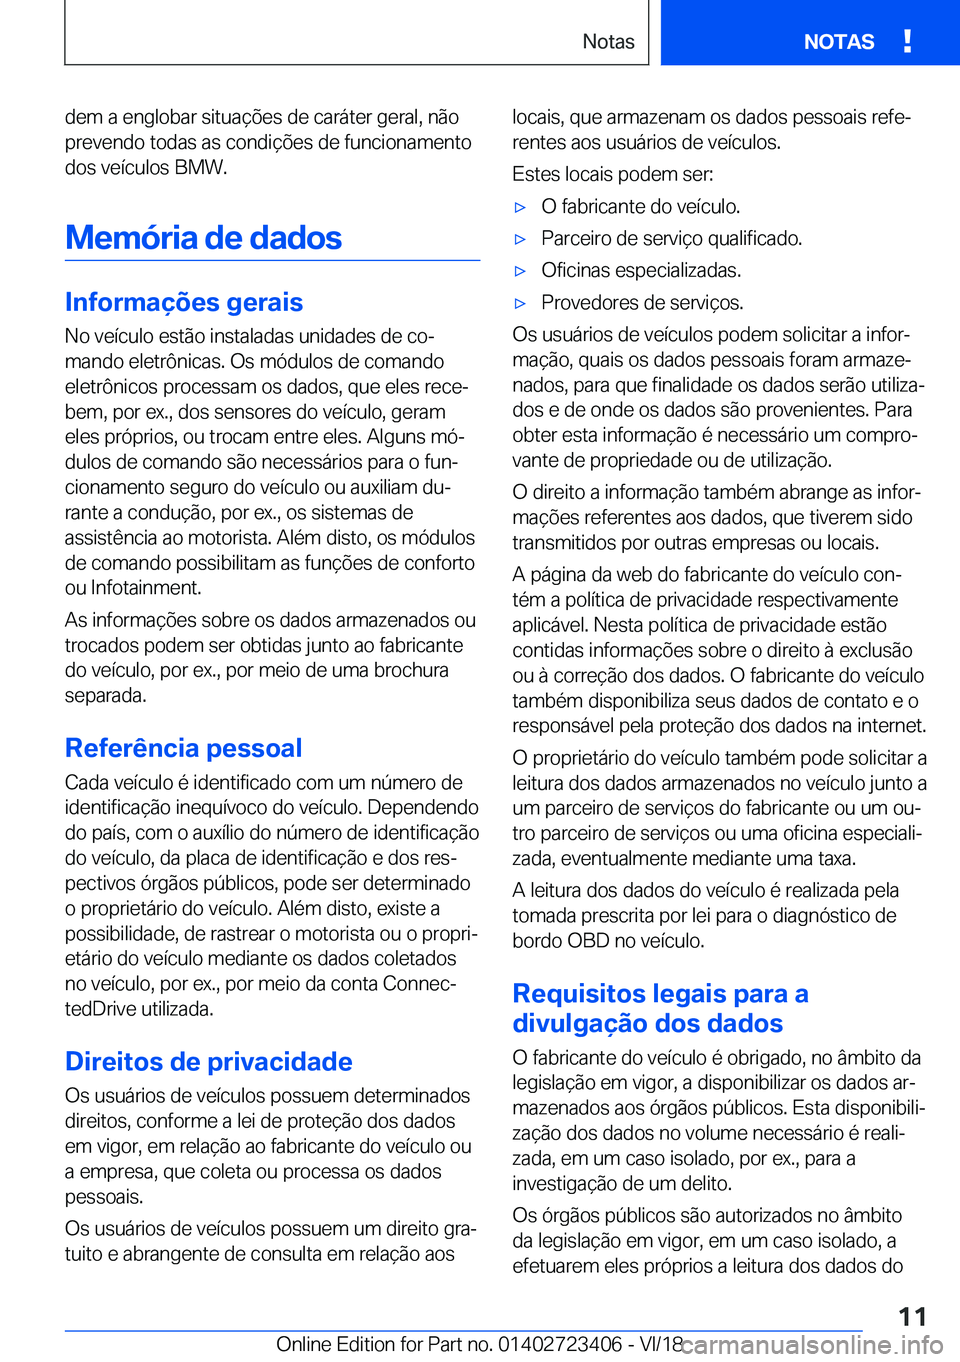 BMW 2 SERIES COUPE 2019  Manual do condutor (in Portuguese) �d�e�m��a��e�n�g�l�o�b�a�r��s�i�t�u�a�